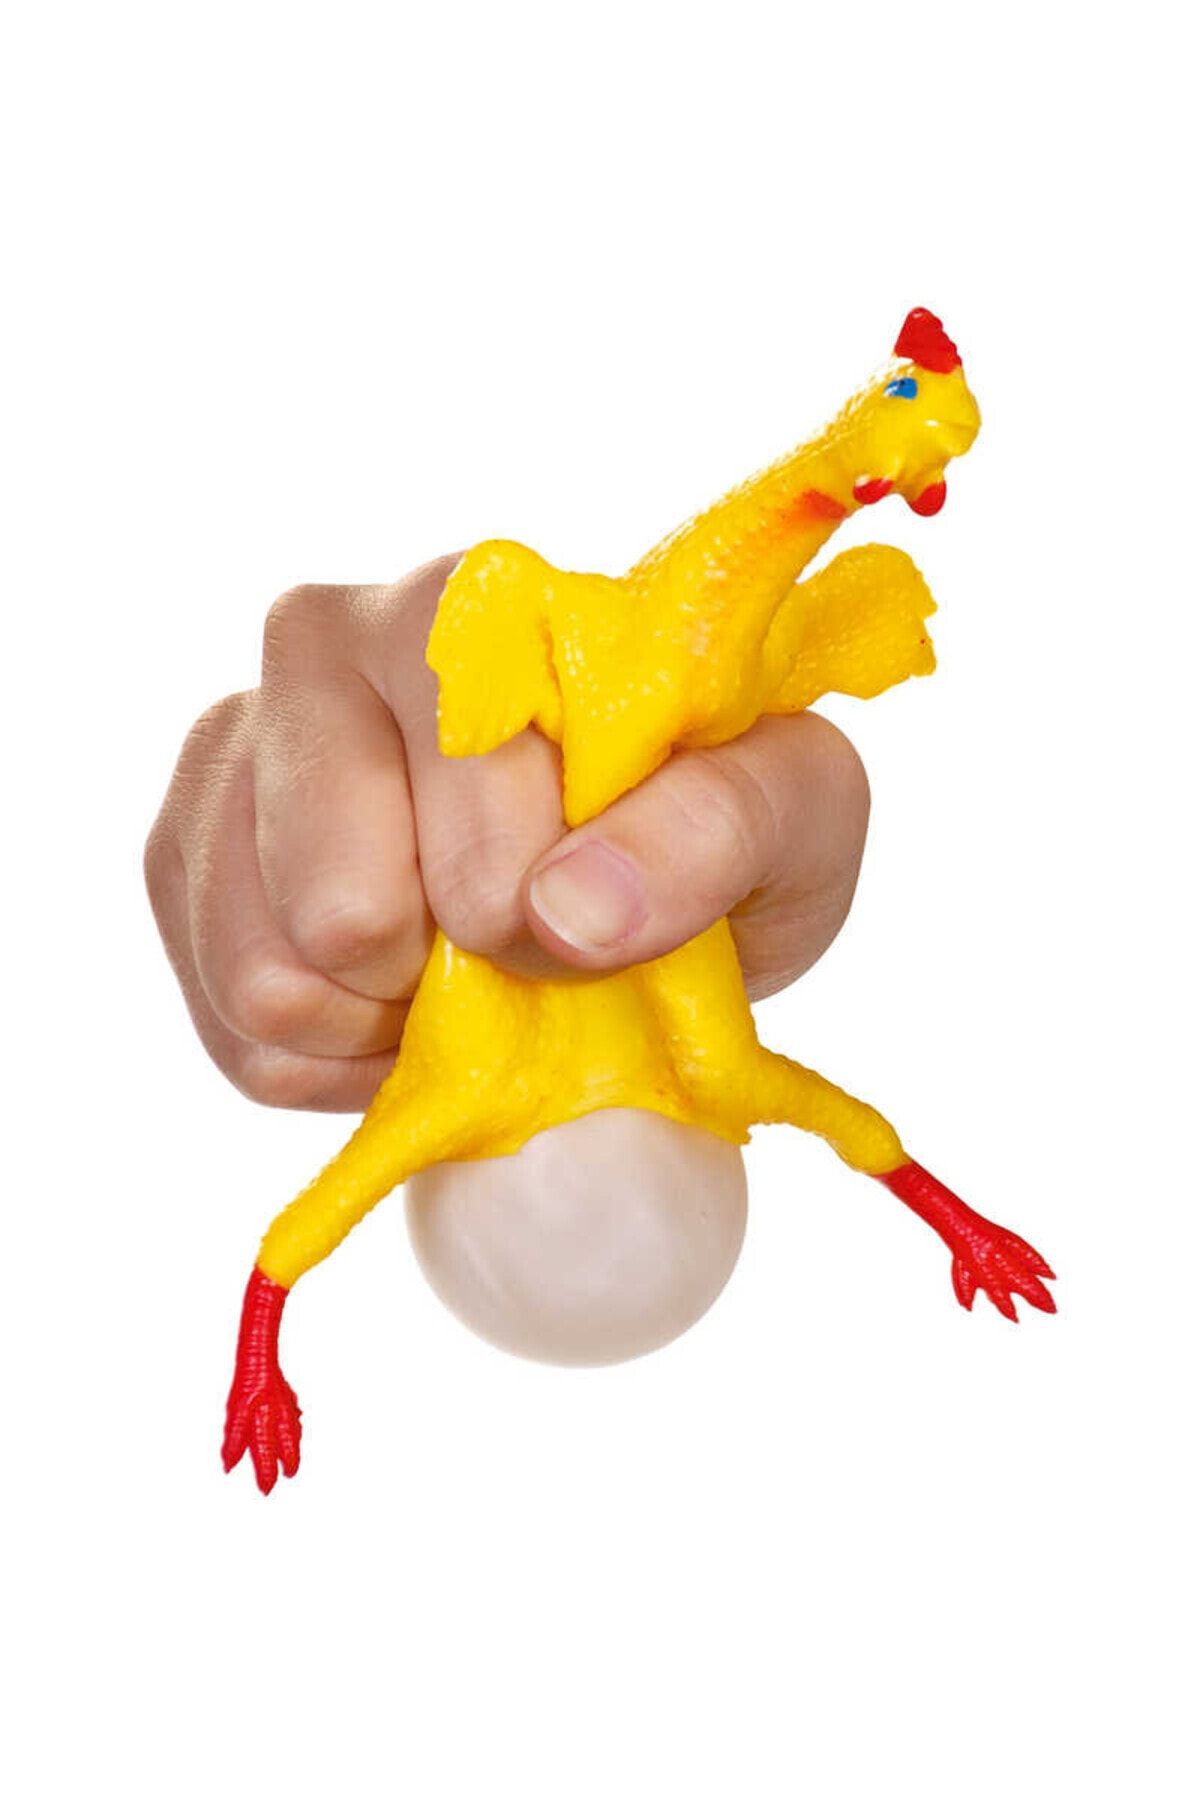 GÜZELYÜZ AVM Yumurtlayan Tavuk Renkli Işıklı 16cm Sarı Tavuk Stres Oyuncağı Hediyelik Rgb Işıklı Efsane 1Adet